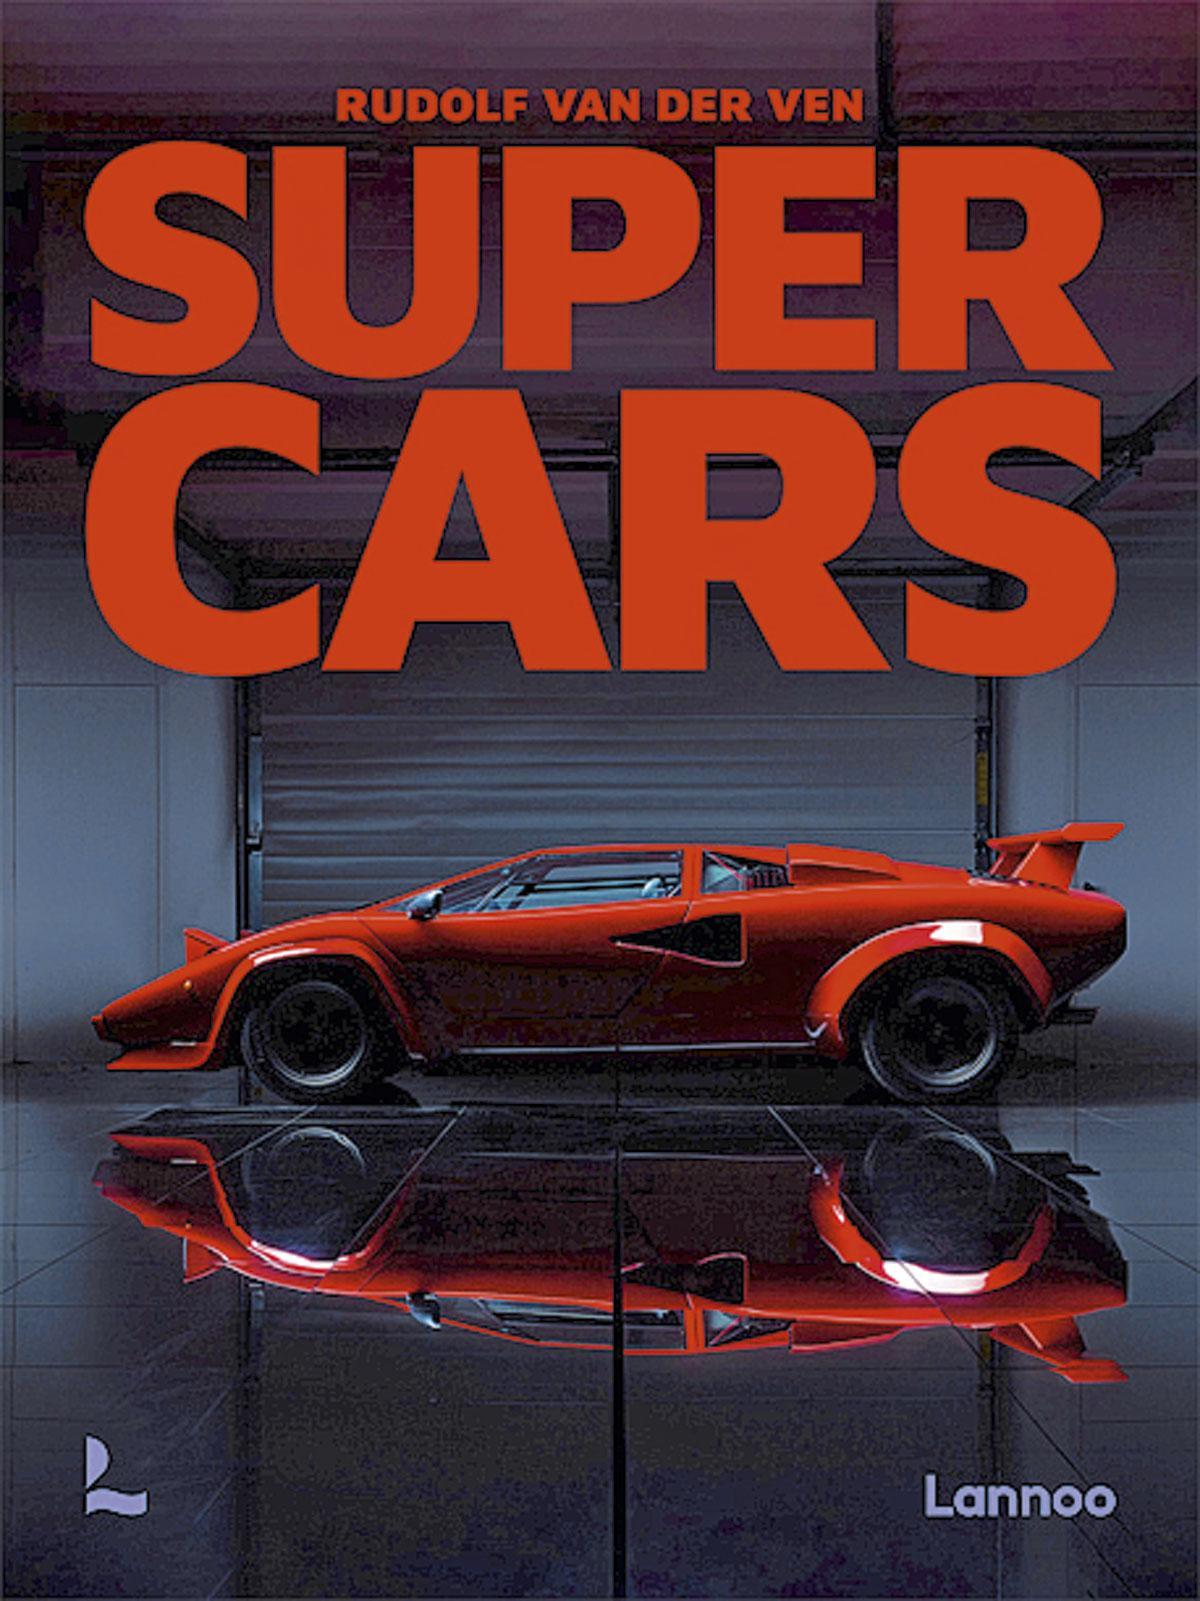 Supercars(222 pages, 75 euros) sera éditée par Lannoo le 19 avril et sera diffusée quasi mondialement. Le livre est en anglais. www.lannoo.com